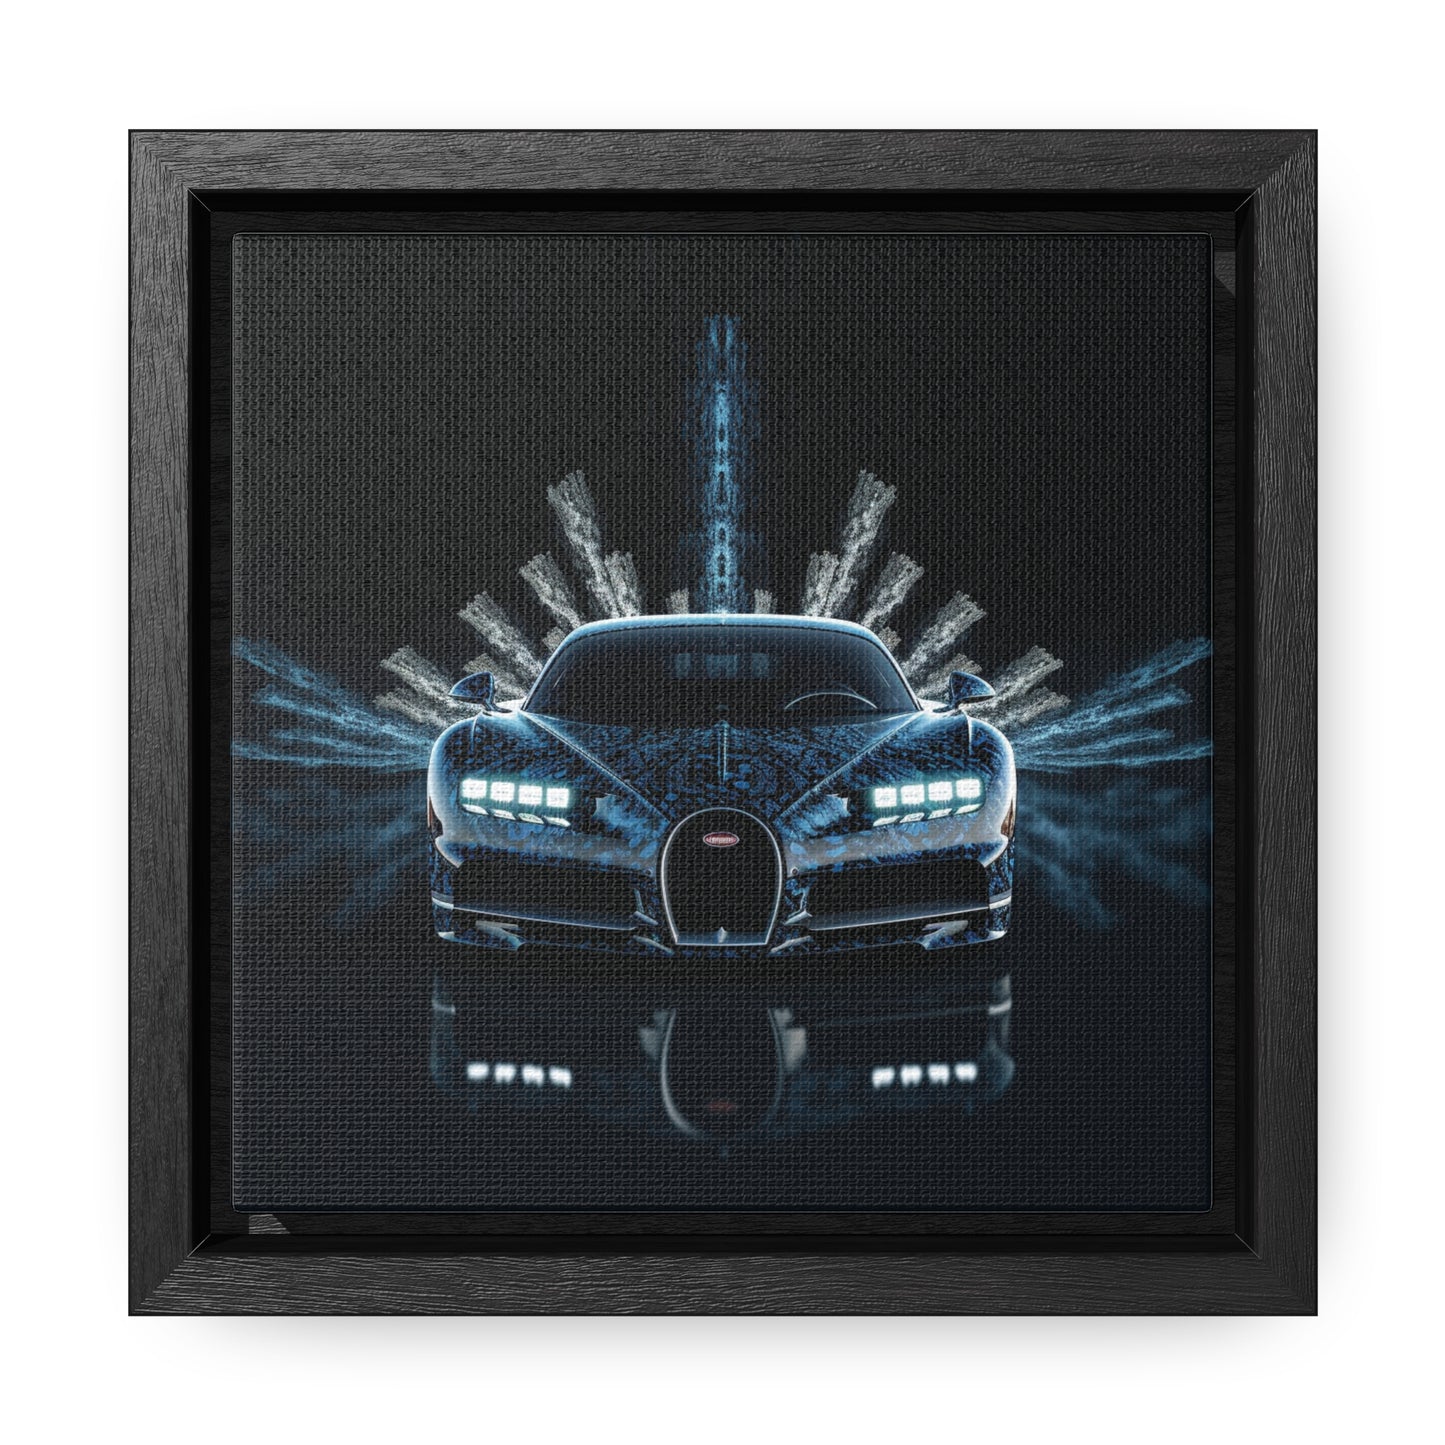 Gallery Canvas Wraps, Square Frame Hyper Bugatti 2